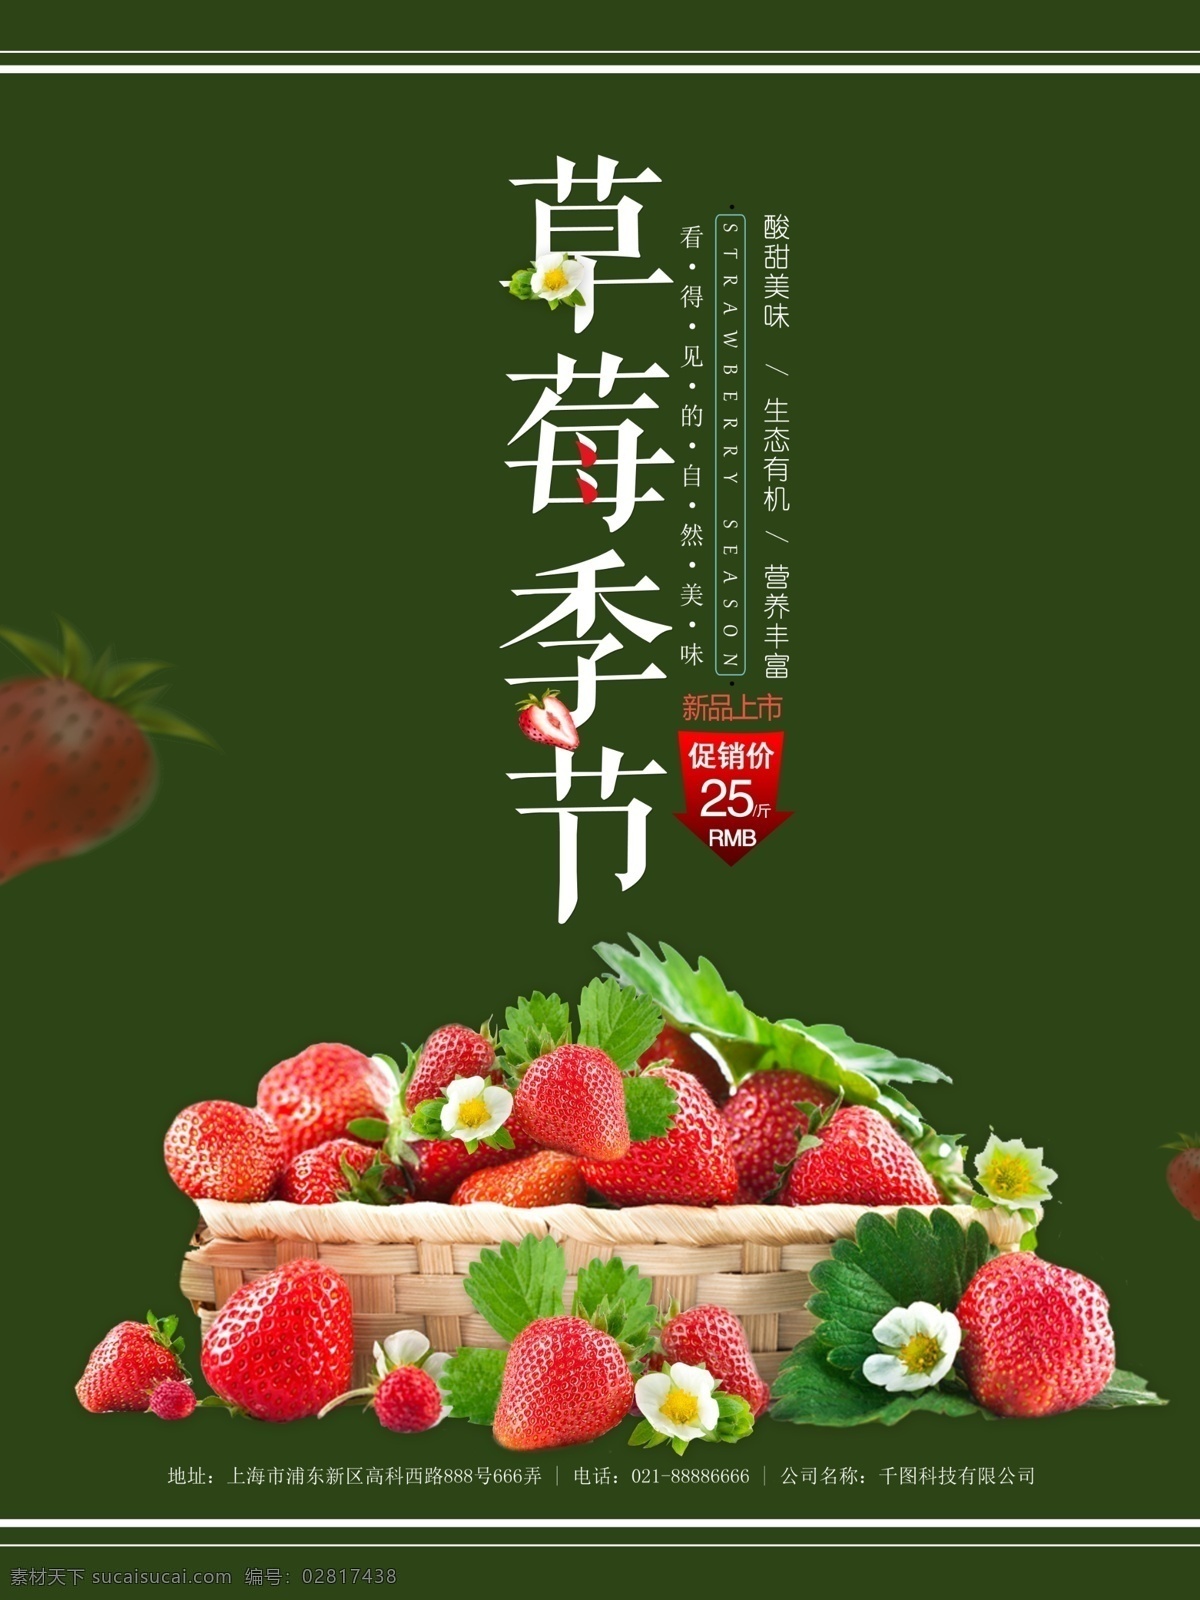 草莓 季节 绿色 清新 促销 海报 源文件 草莓促销 草莓花 草莓季节 清新简洁 水果促销